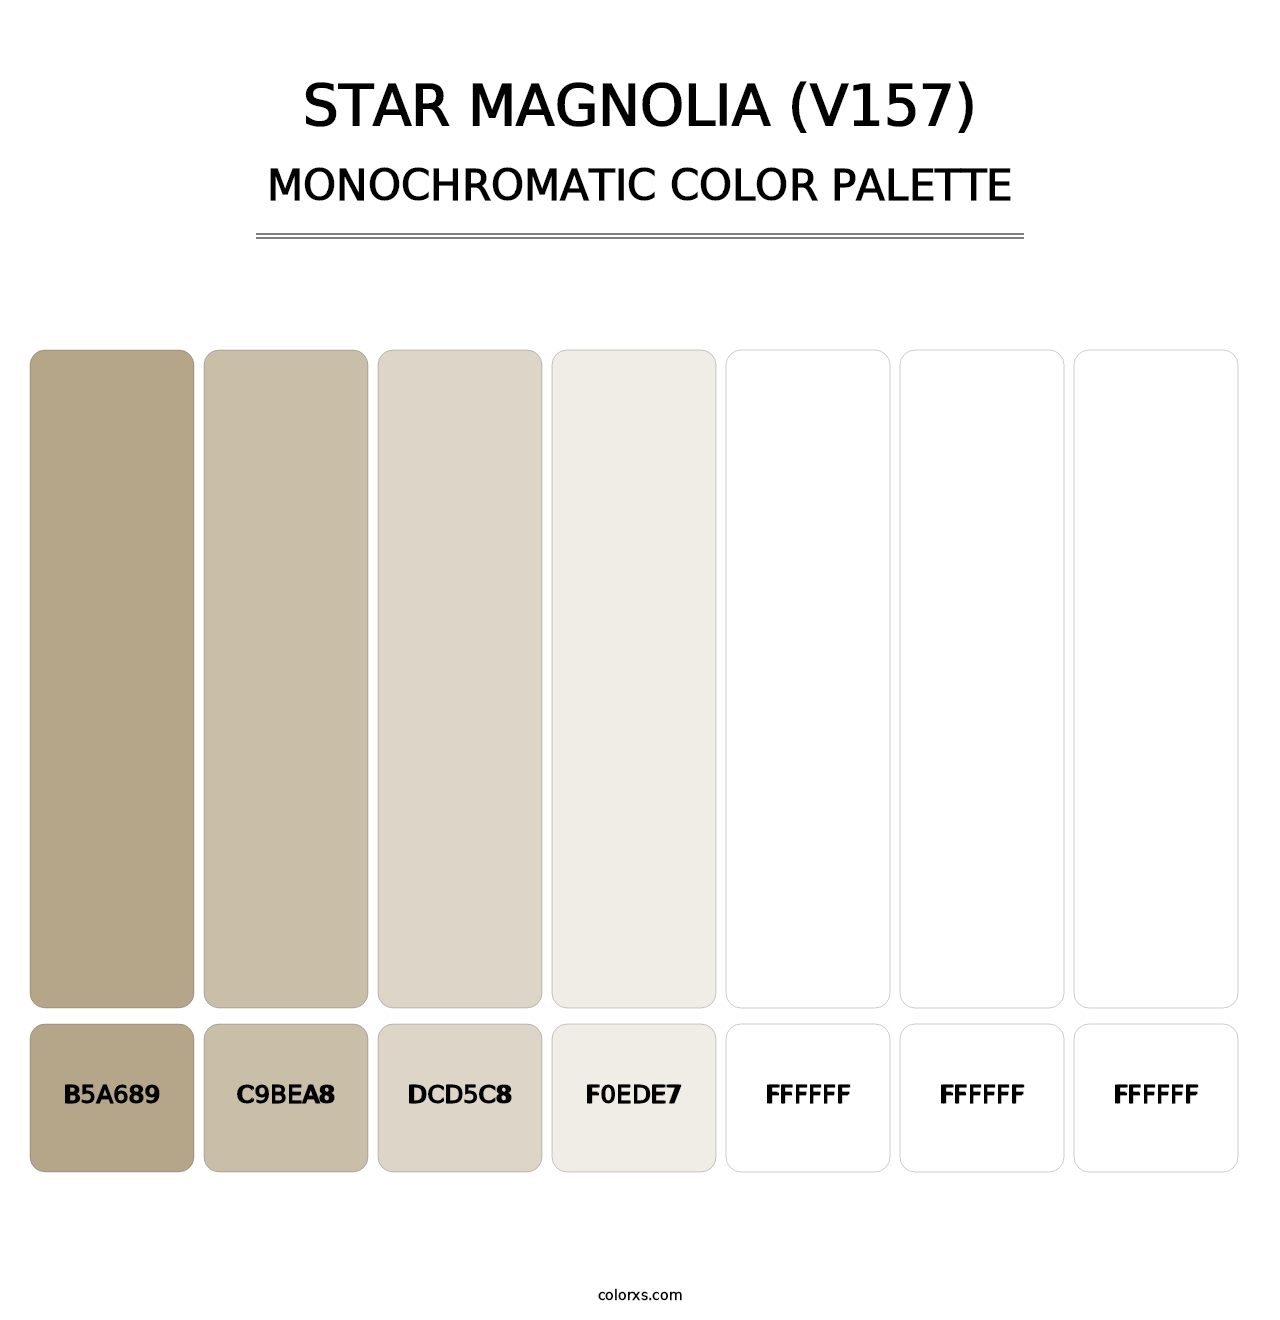 Star Magnolia (V157) - Monochromatic Color Palette